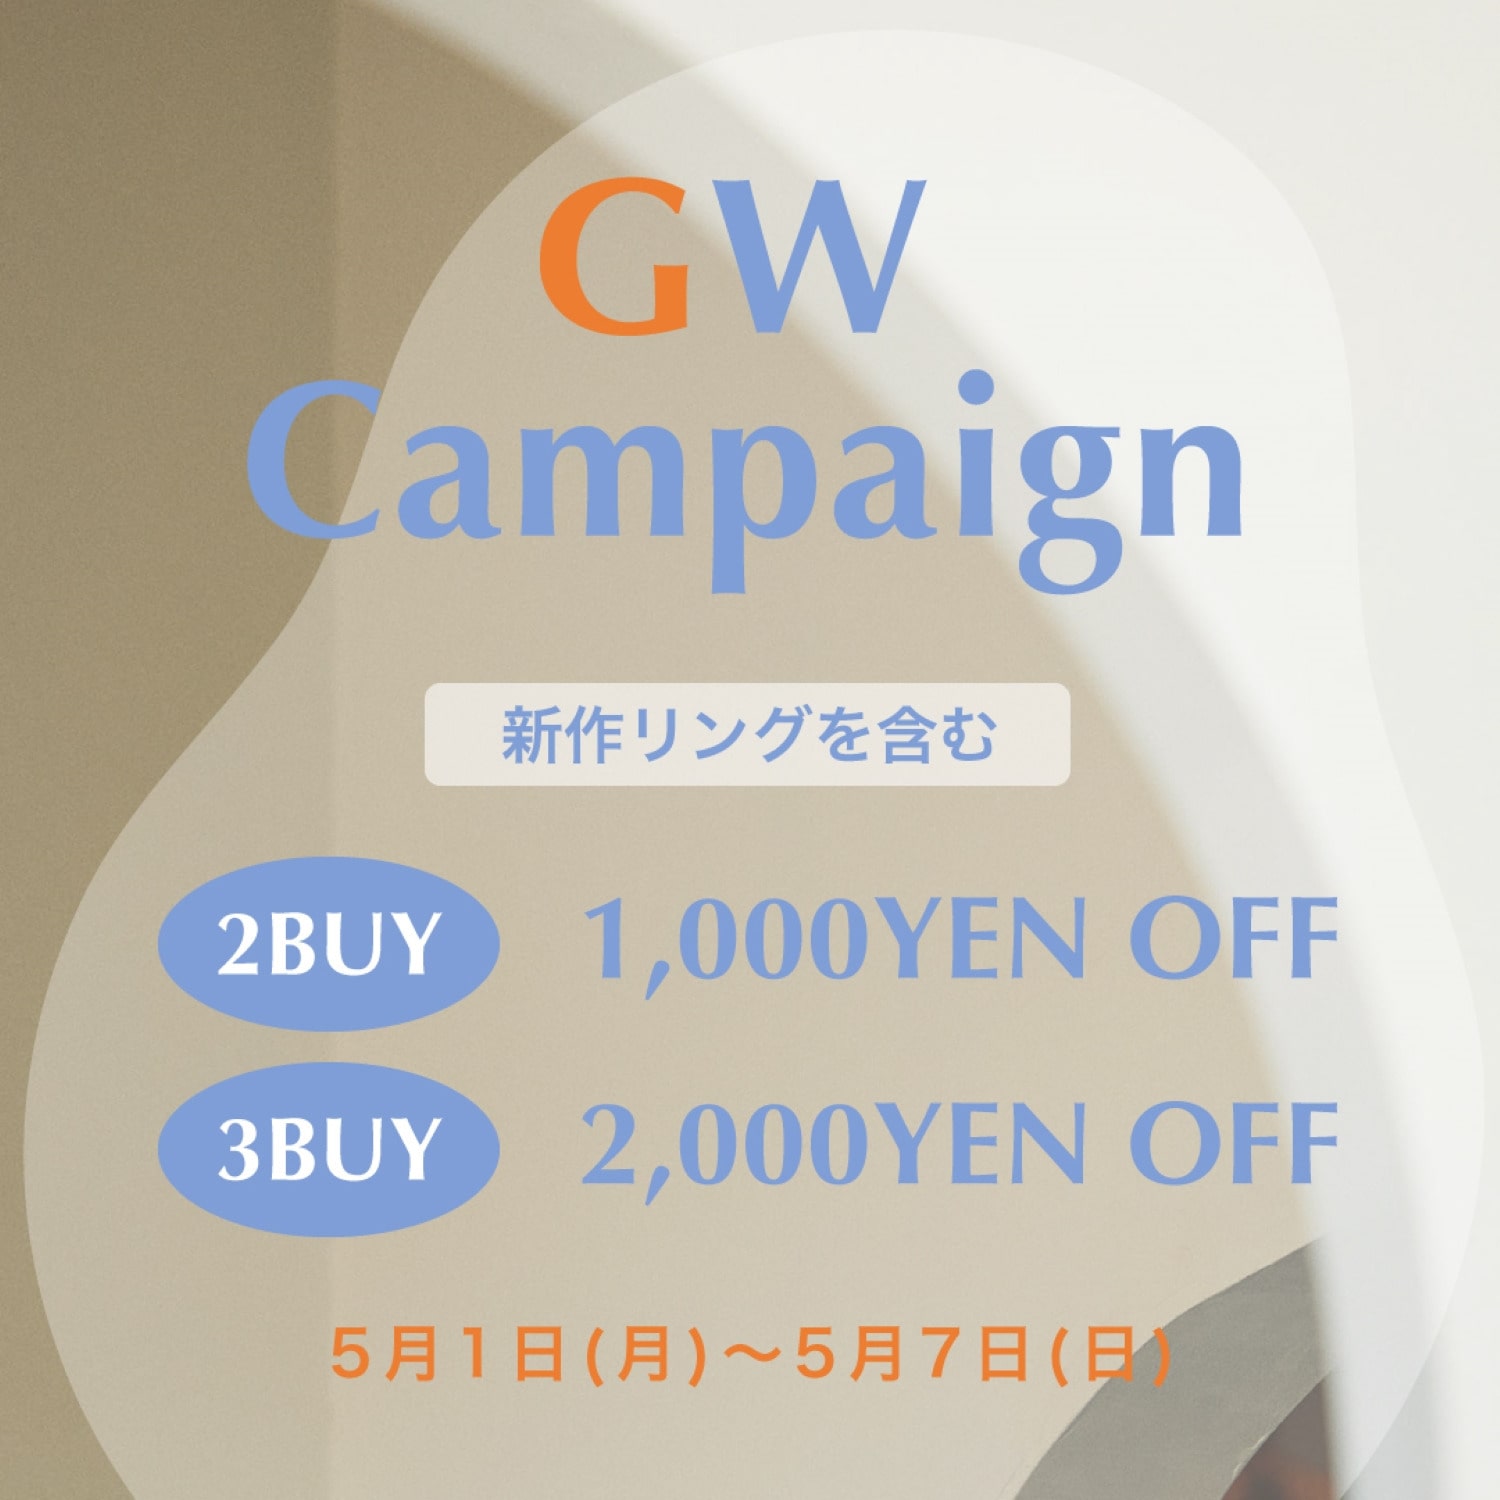 GW Campaign